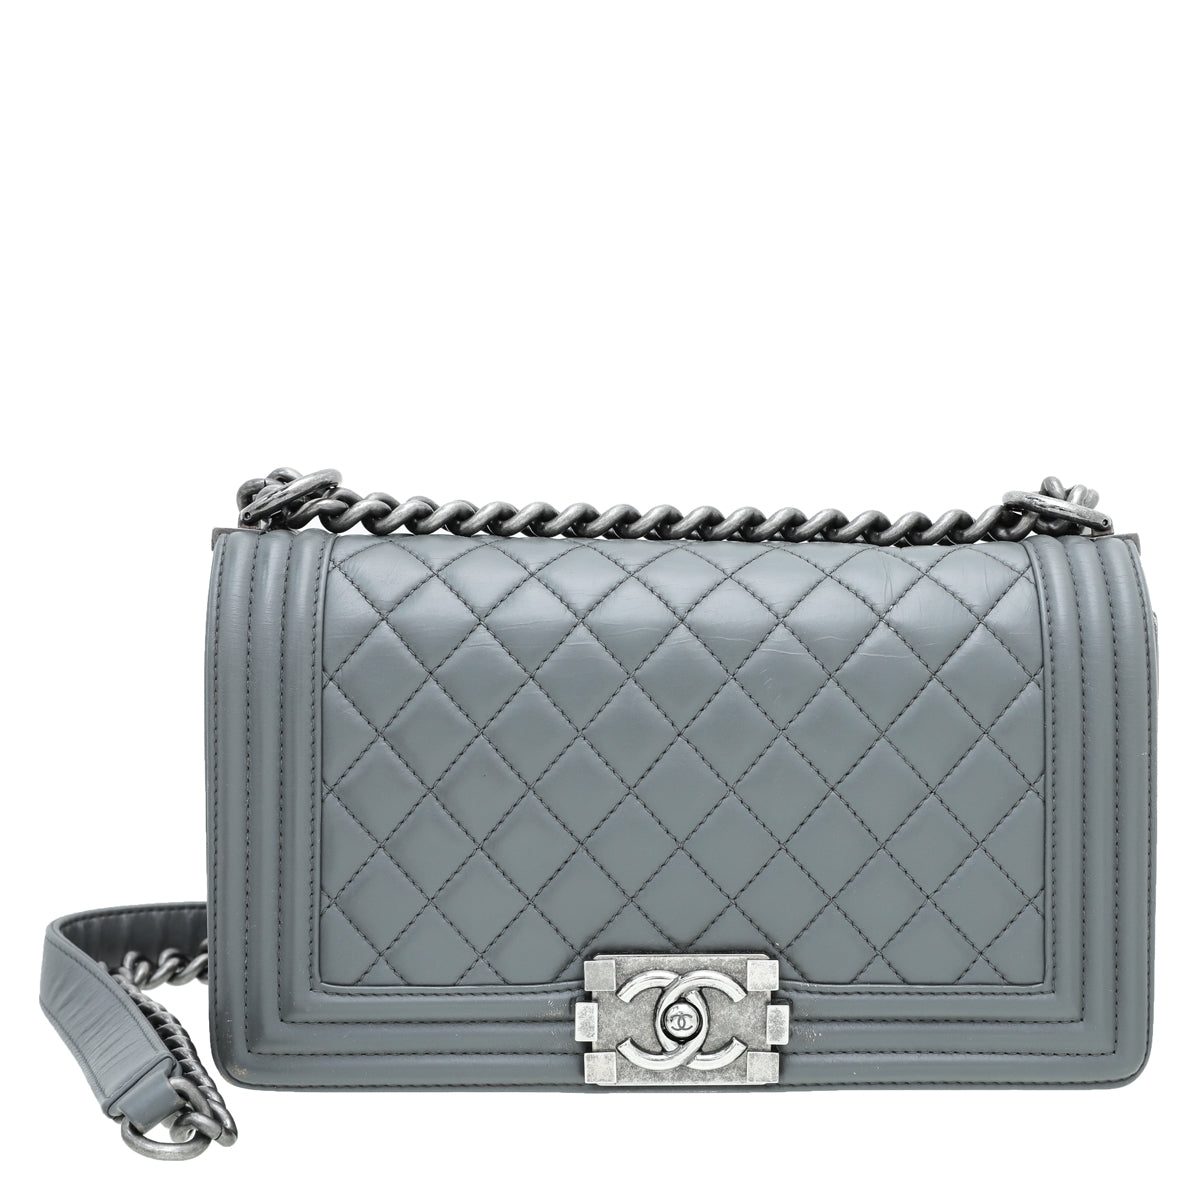 Chanel Grey Le Boy Medium Bag